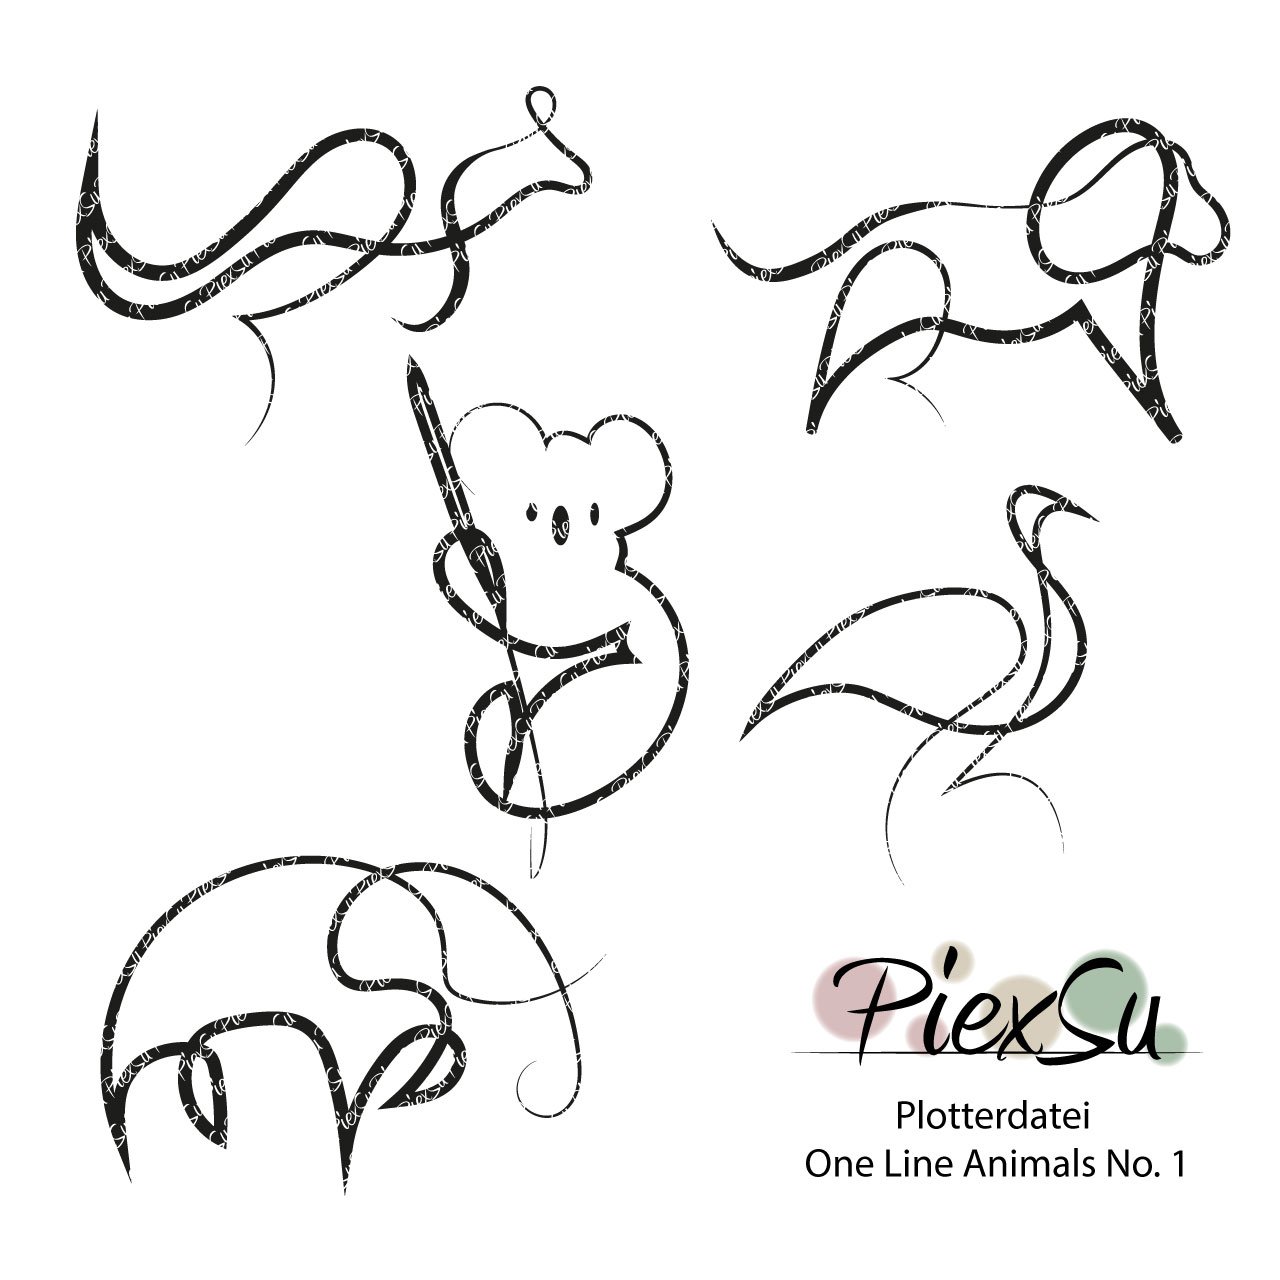 PiexSu-Plotterdatei-One-Line-Animals-No.-1-plotten-dxf-svg-Titelbild